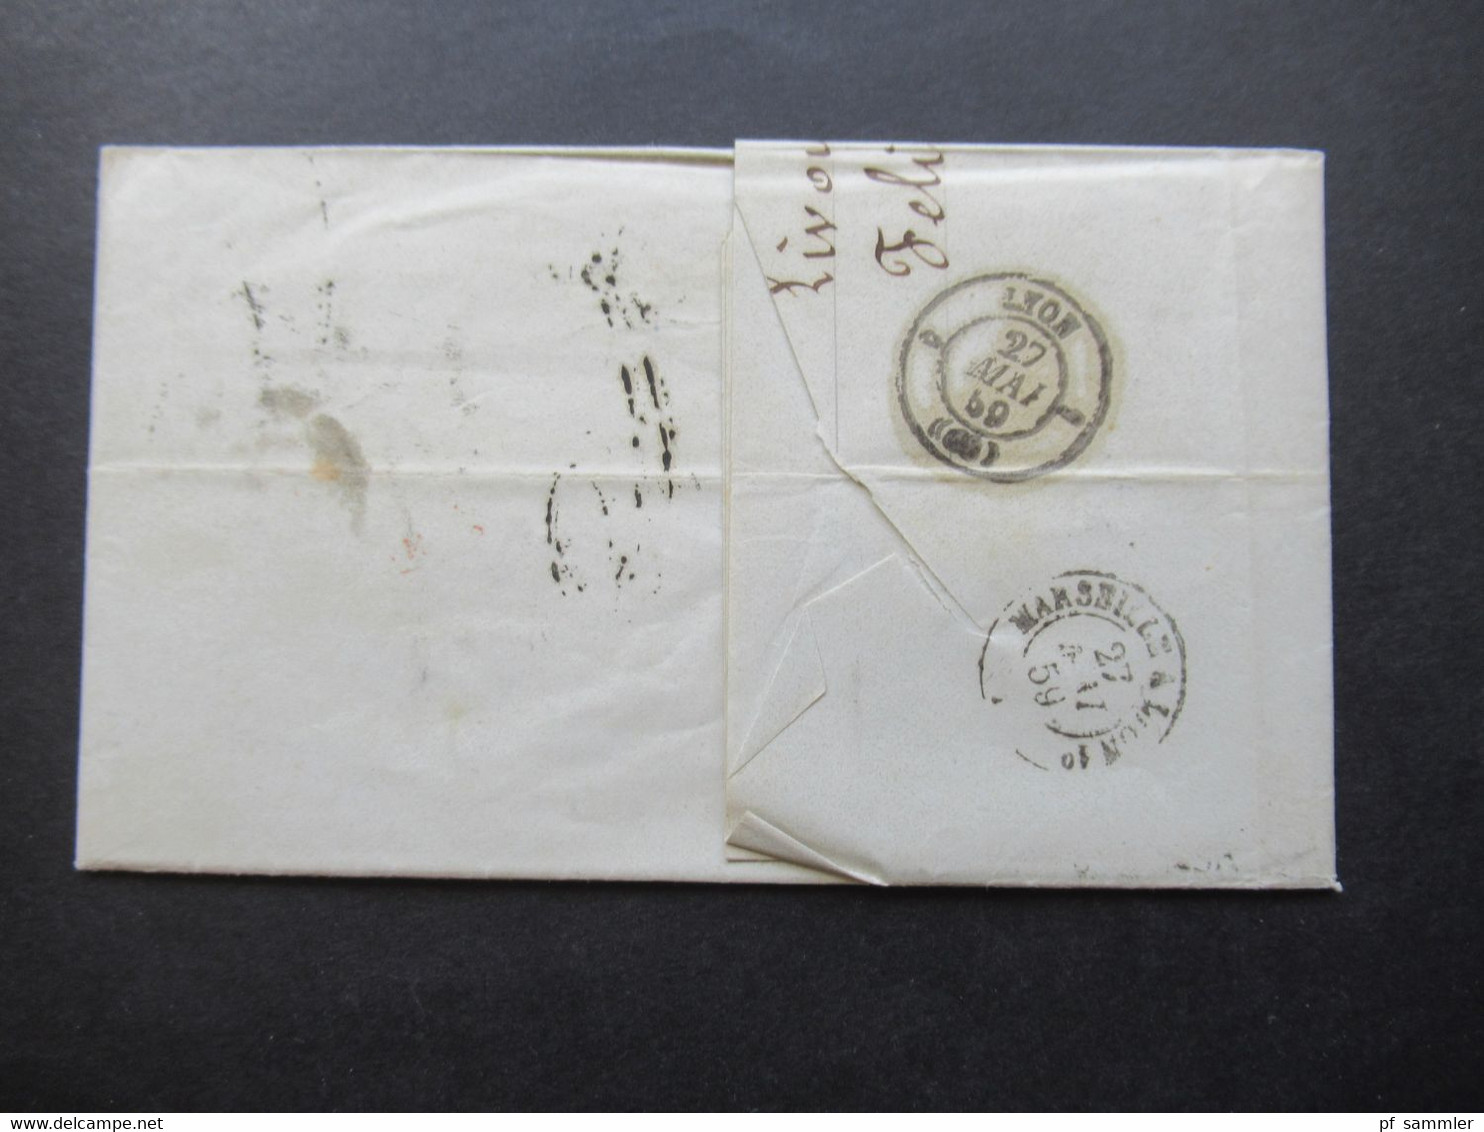 Auslandsbrief Mit Inhalt 1859 Livorno - Lyon Roter K2 Tosc Marseille Handschriftlicher Vermerk Vapeur Via Marseille - Toscana